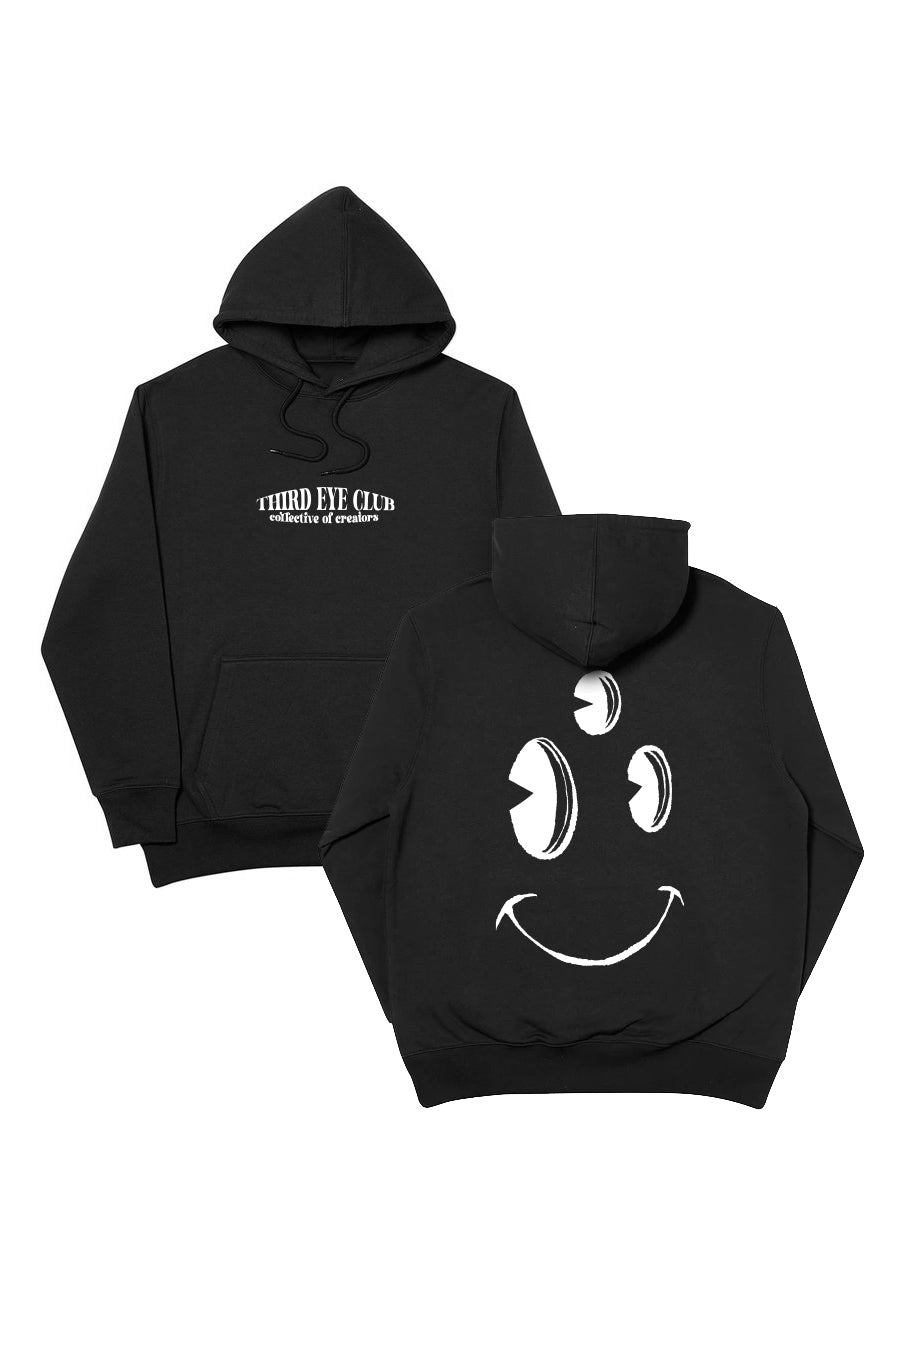 TEC Drop #00 - Black hoodie